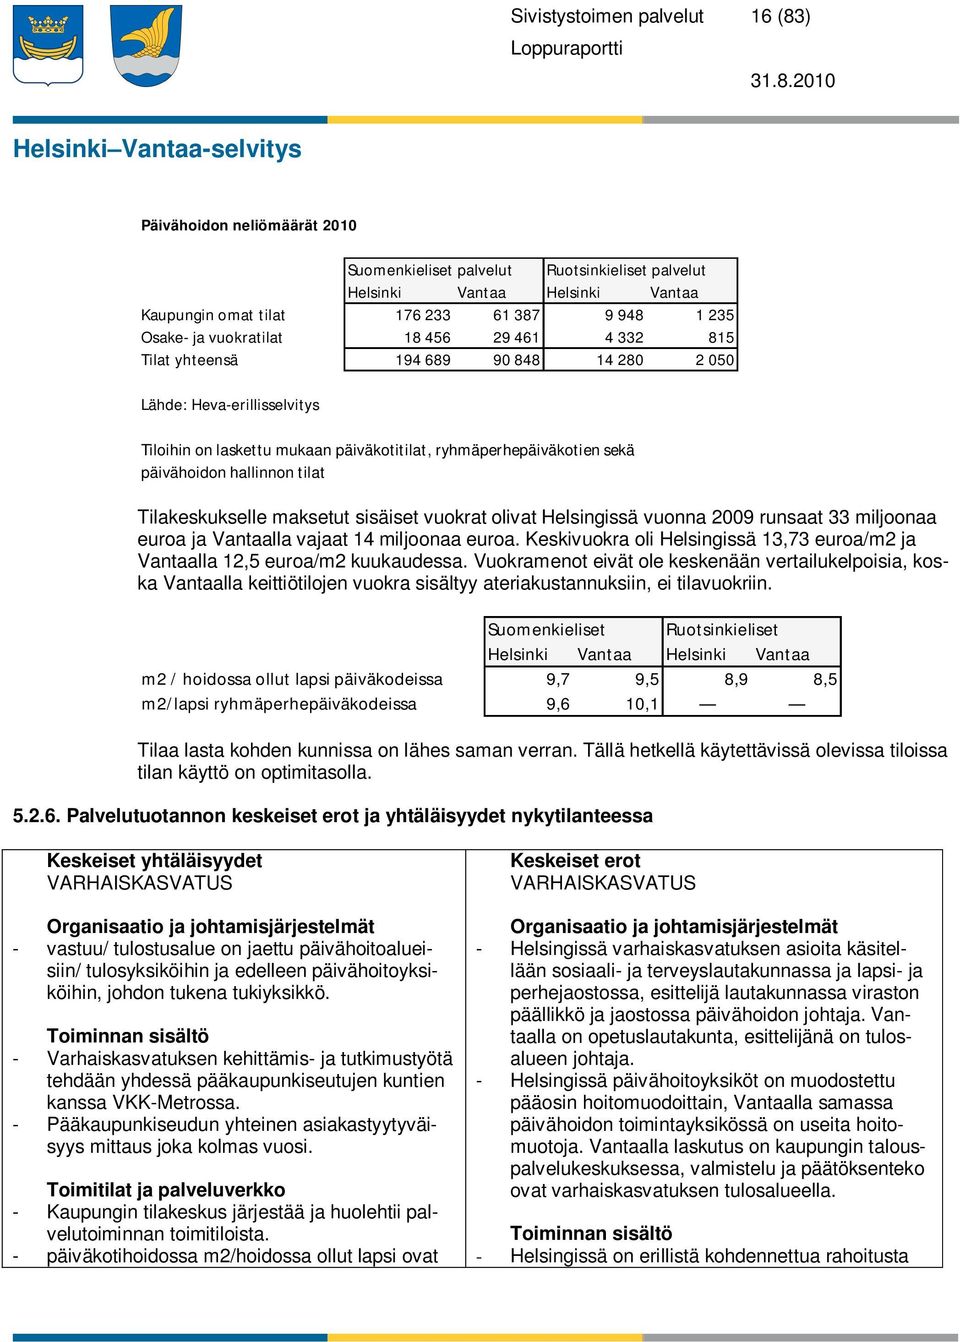 tilat Tilakeskukselle maksetut sisäiset vuokrat olivat Helsingissä vuonna 2009 runsaat 33 miljoonaa euroa ja Vantaalla vajaat 14 miljoonaa euroa.